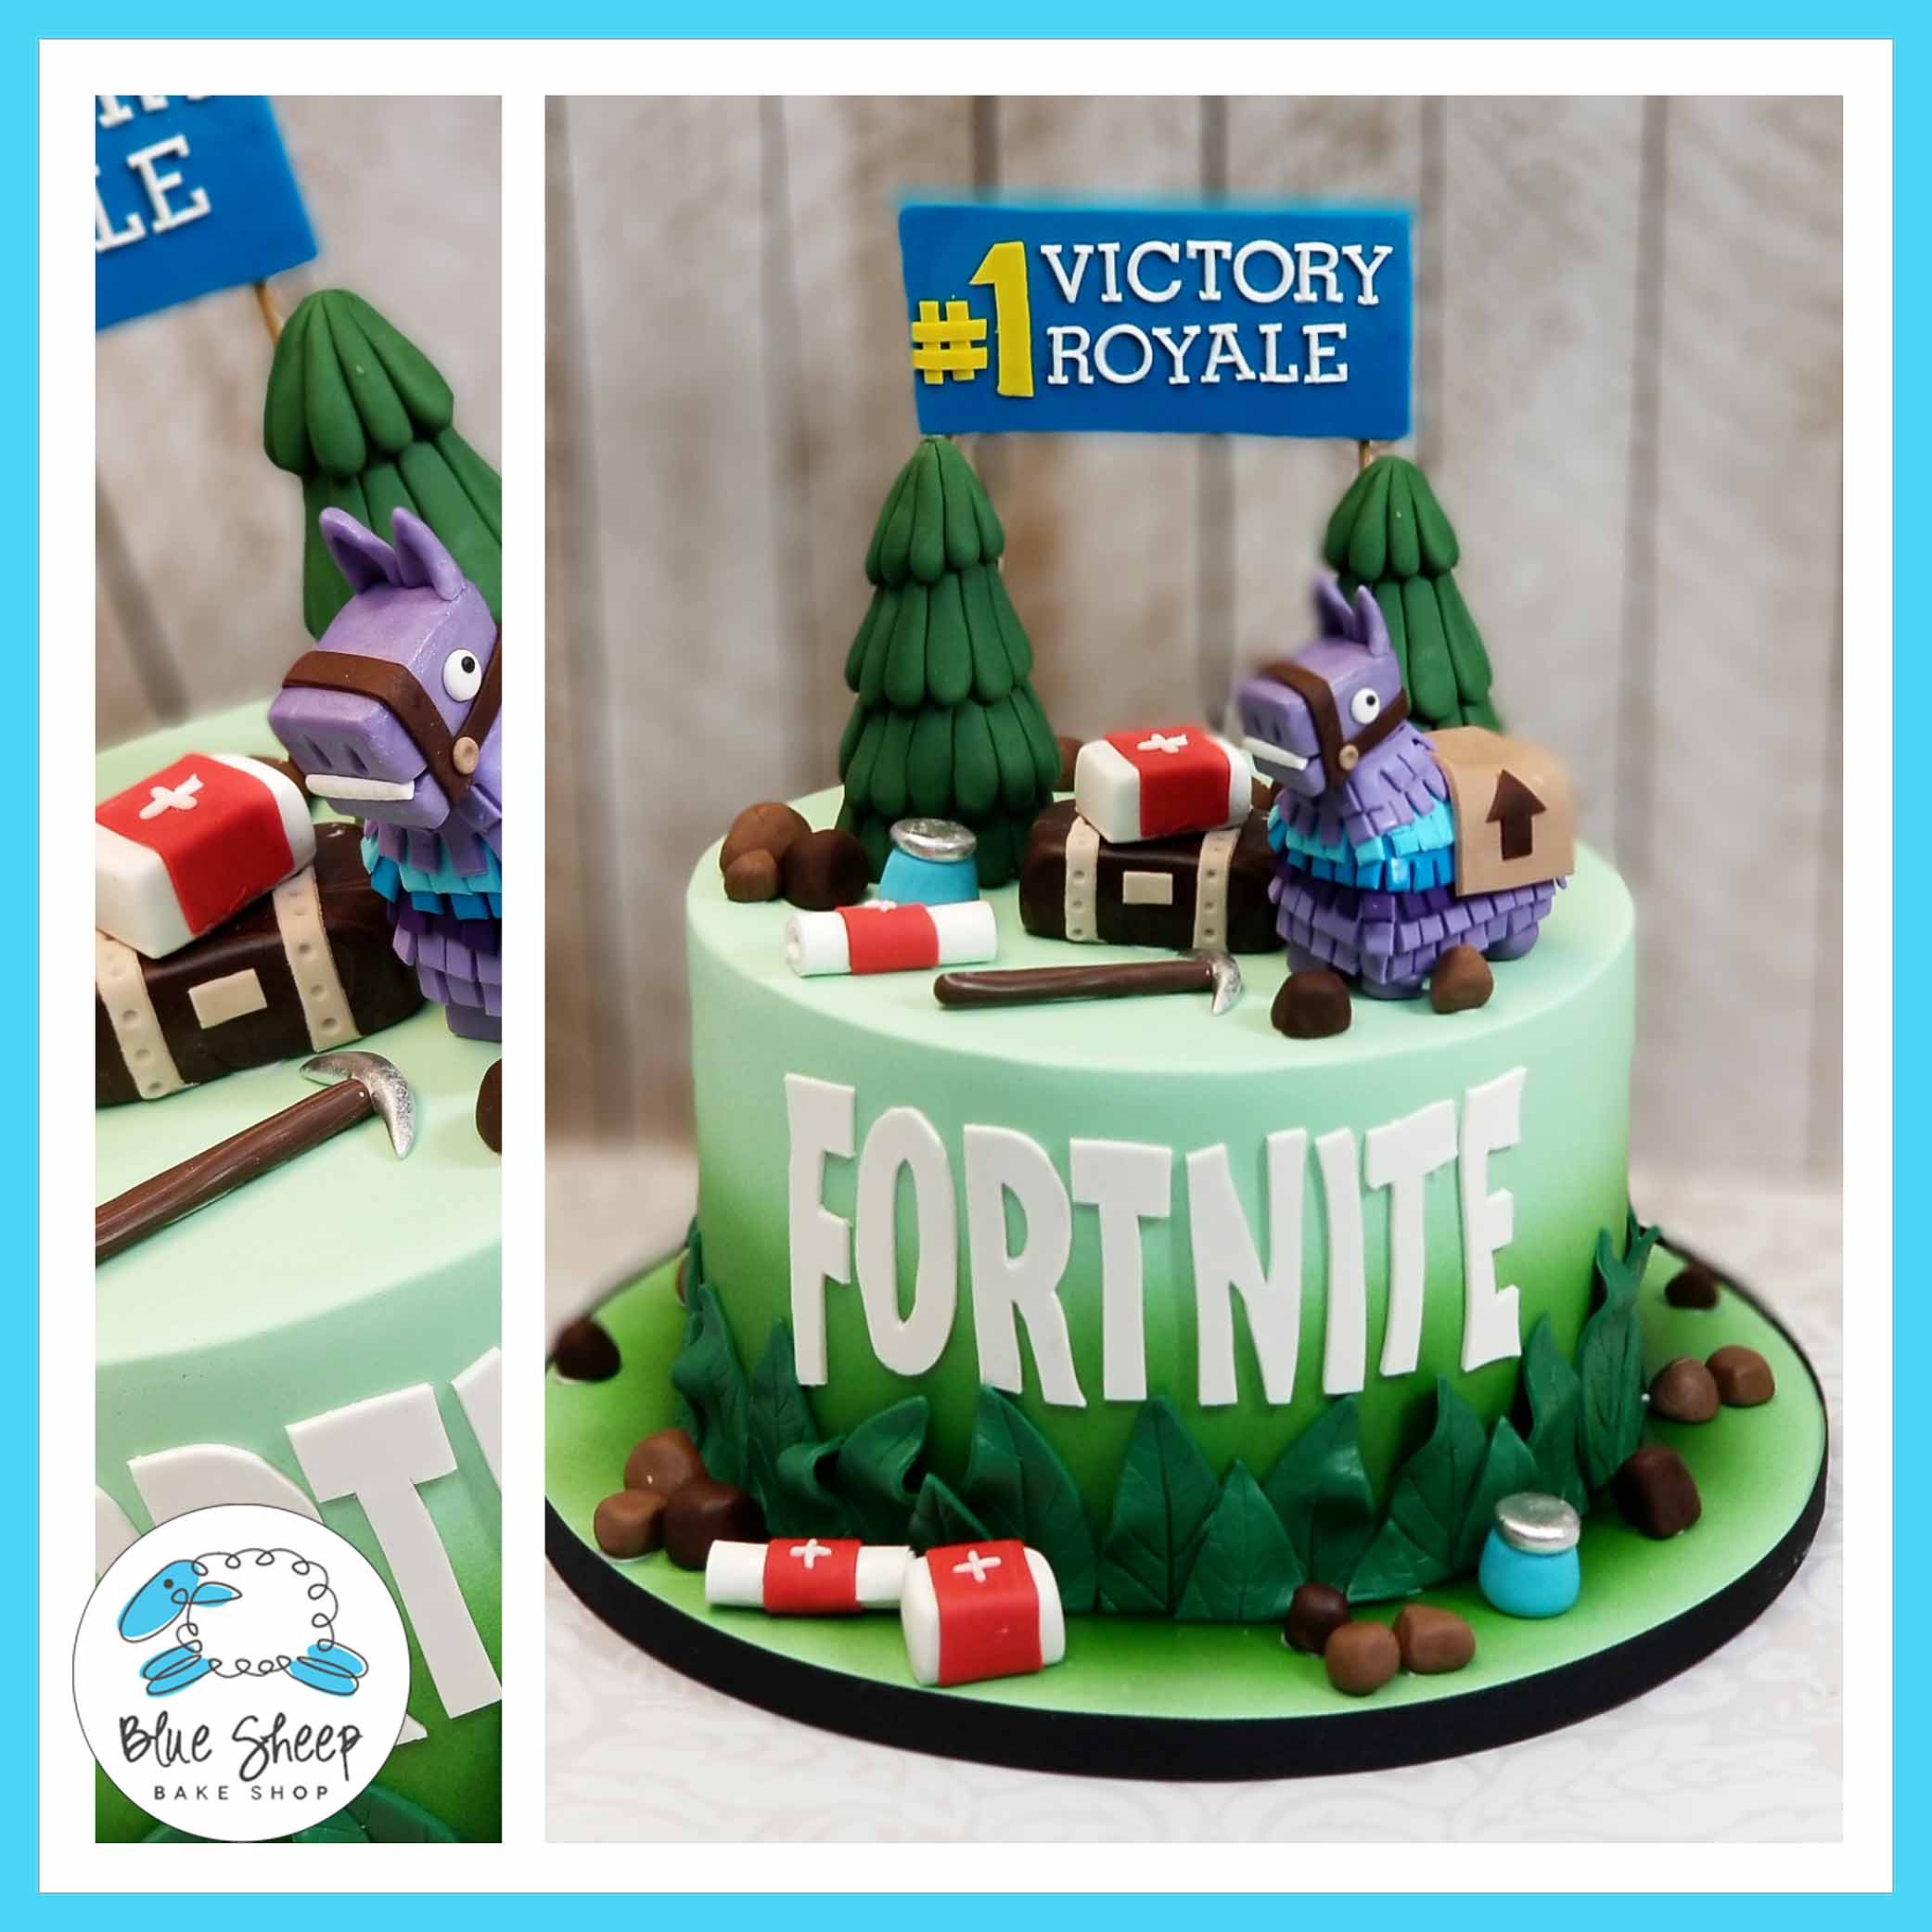 fortnite battle royal cake nj custom cakes blue sheep bake shop - all of the birthday cakes in fortnite